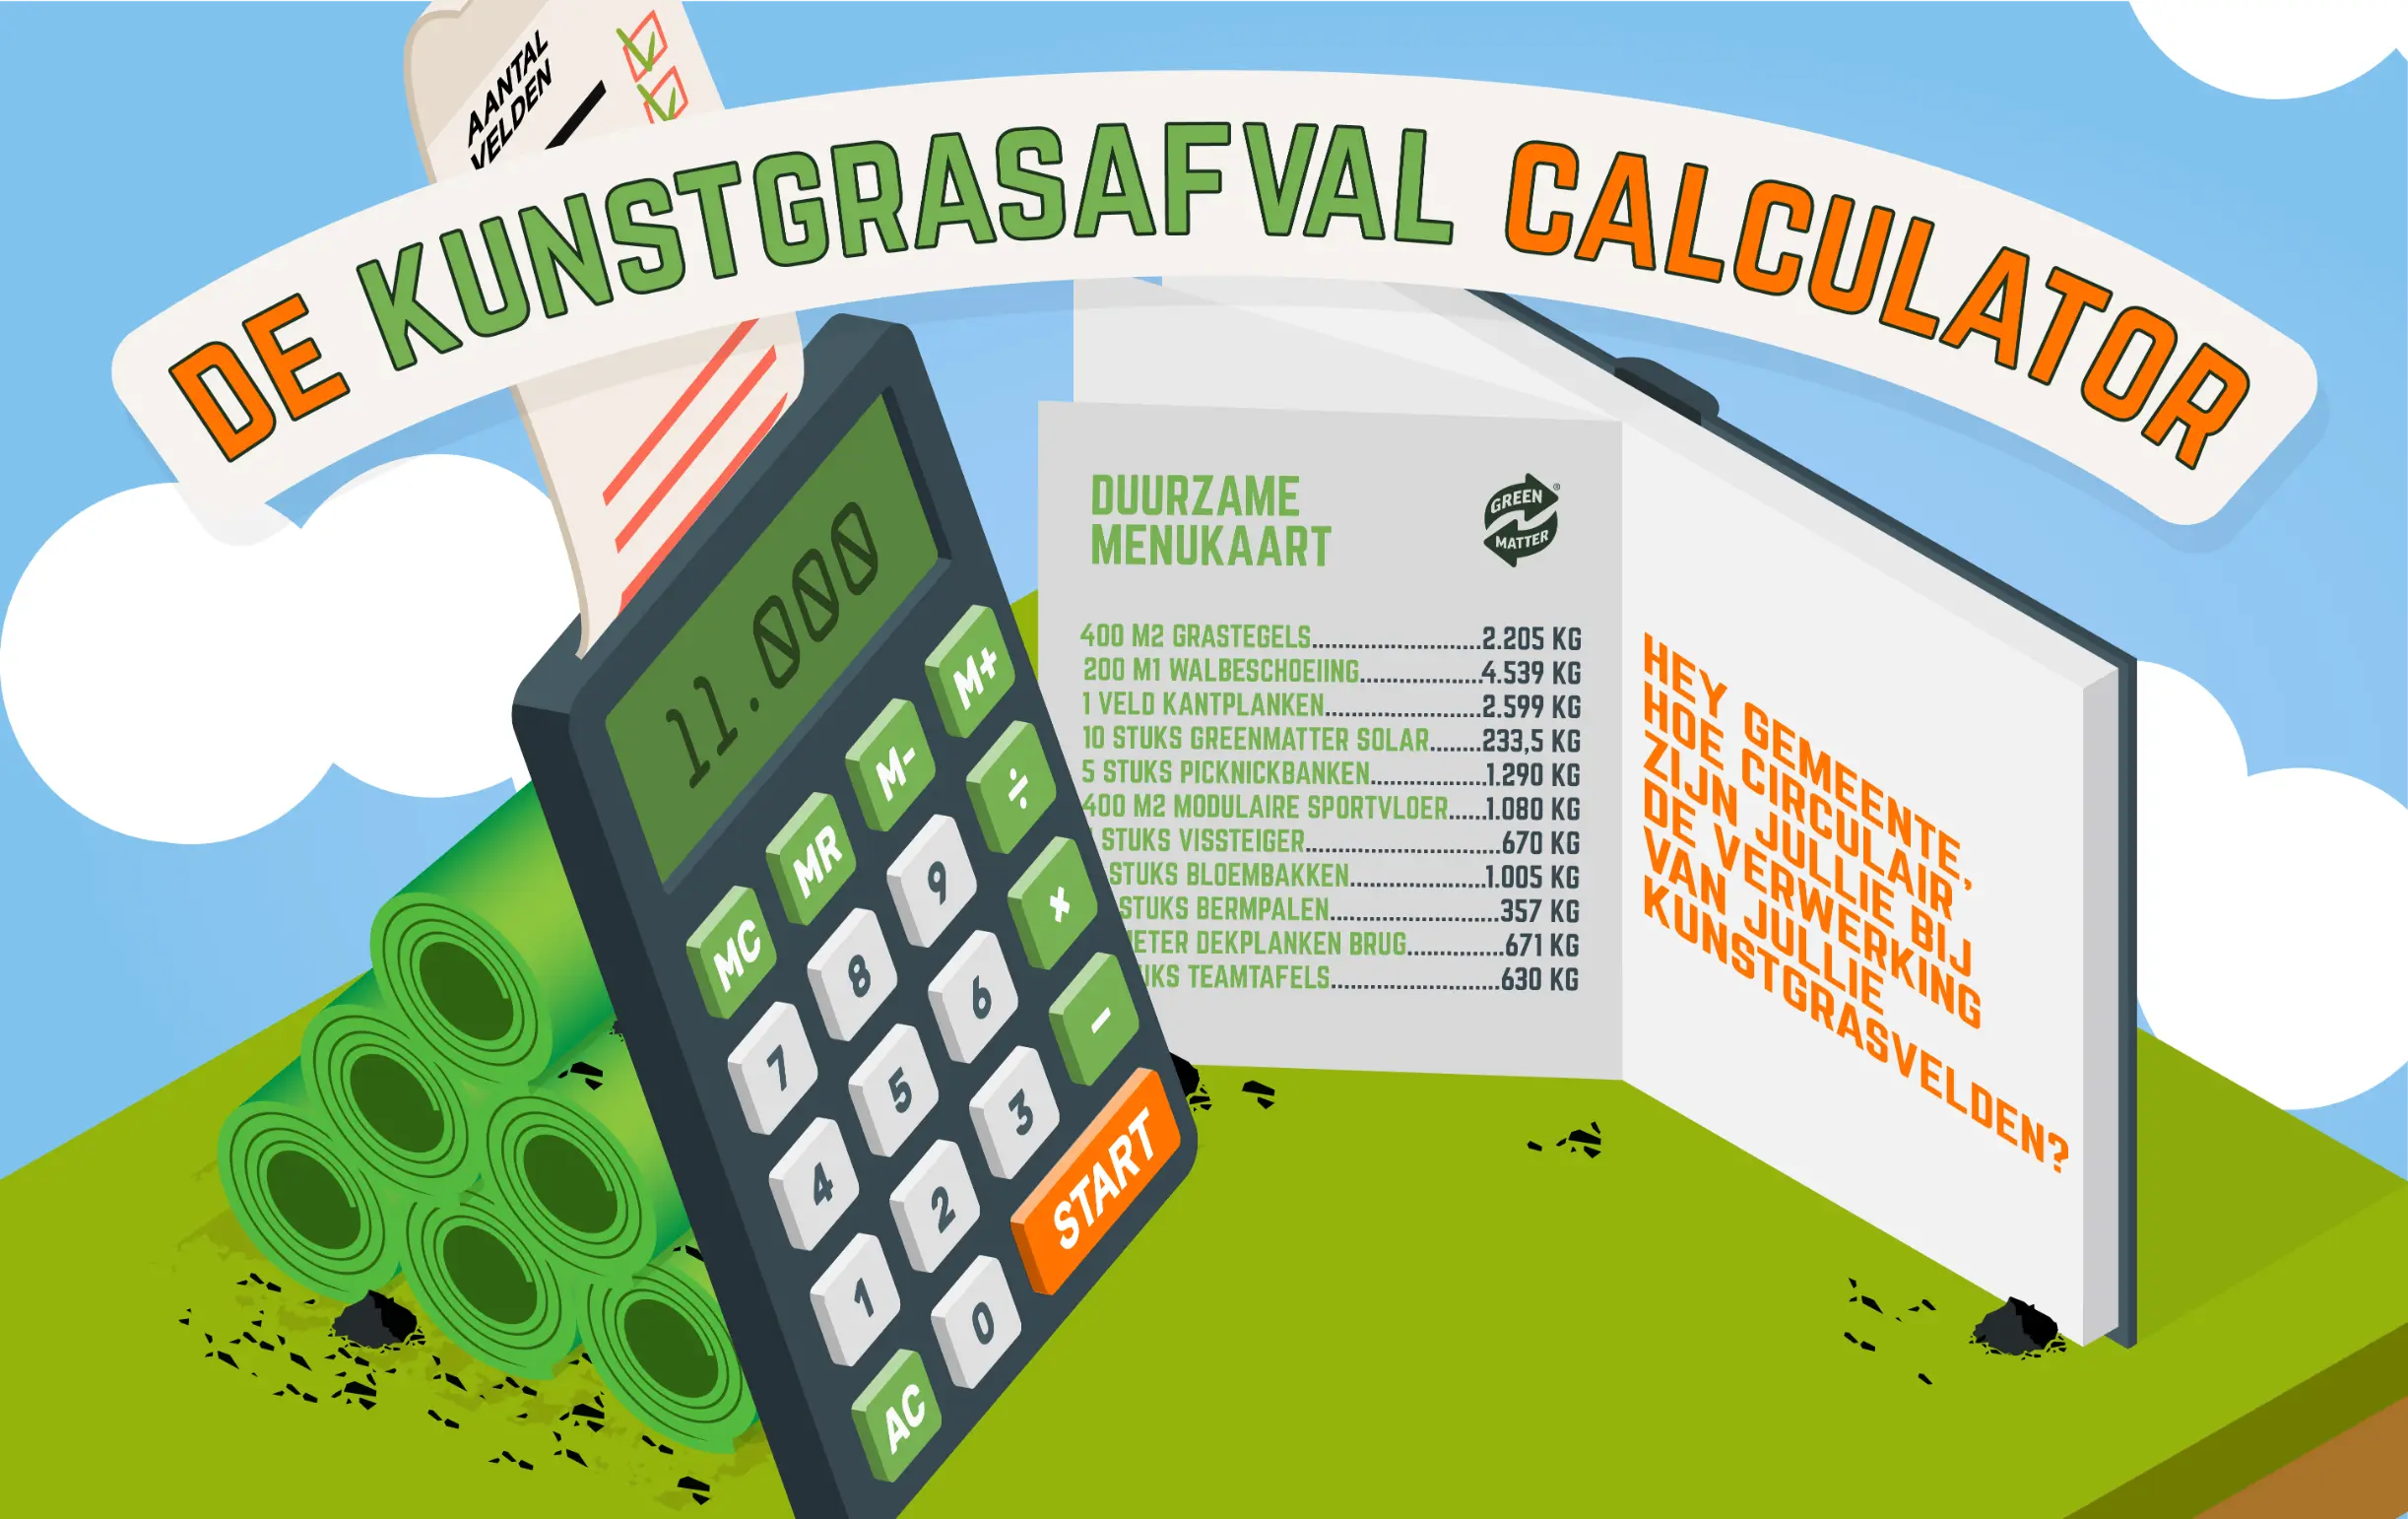 Kunstgrasafval calculator NL